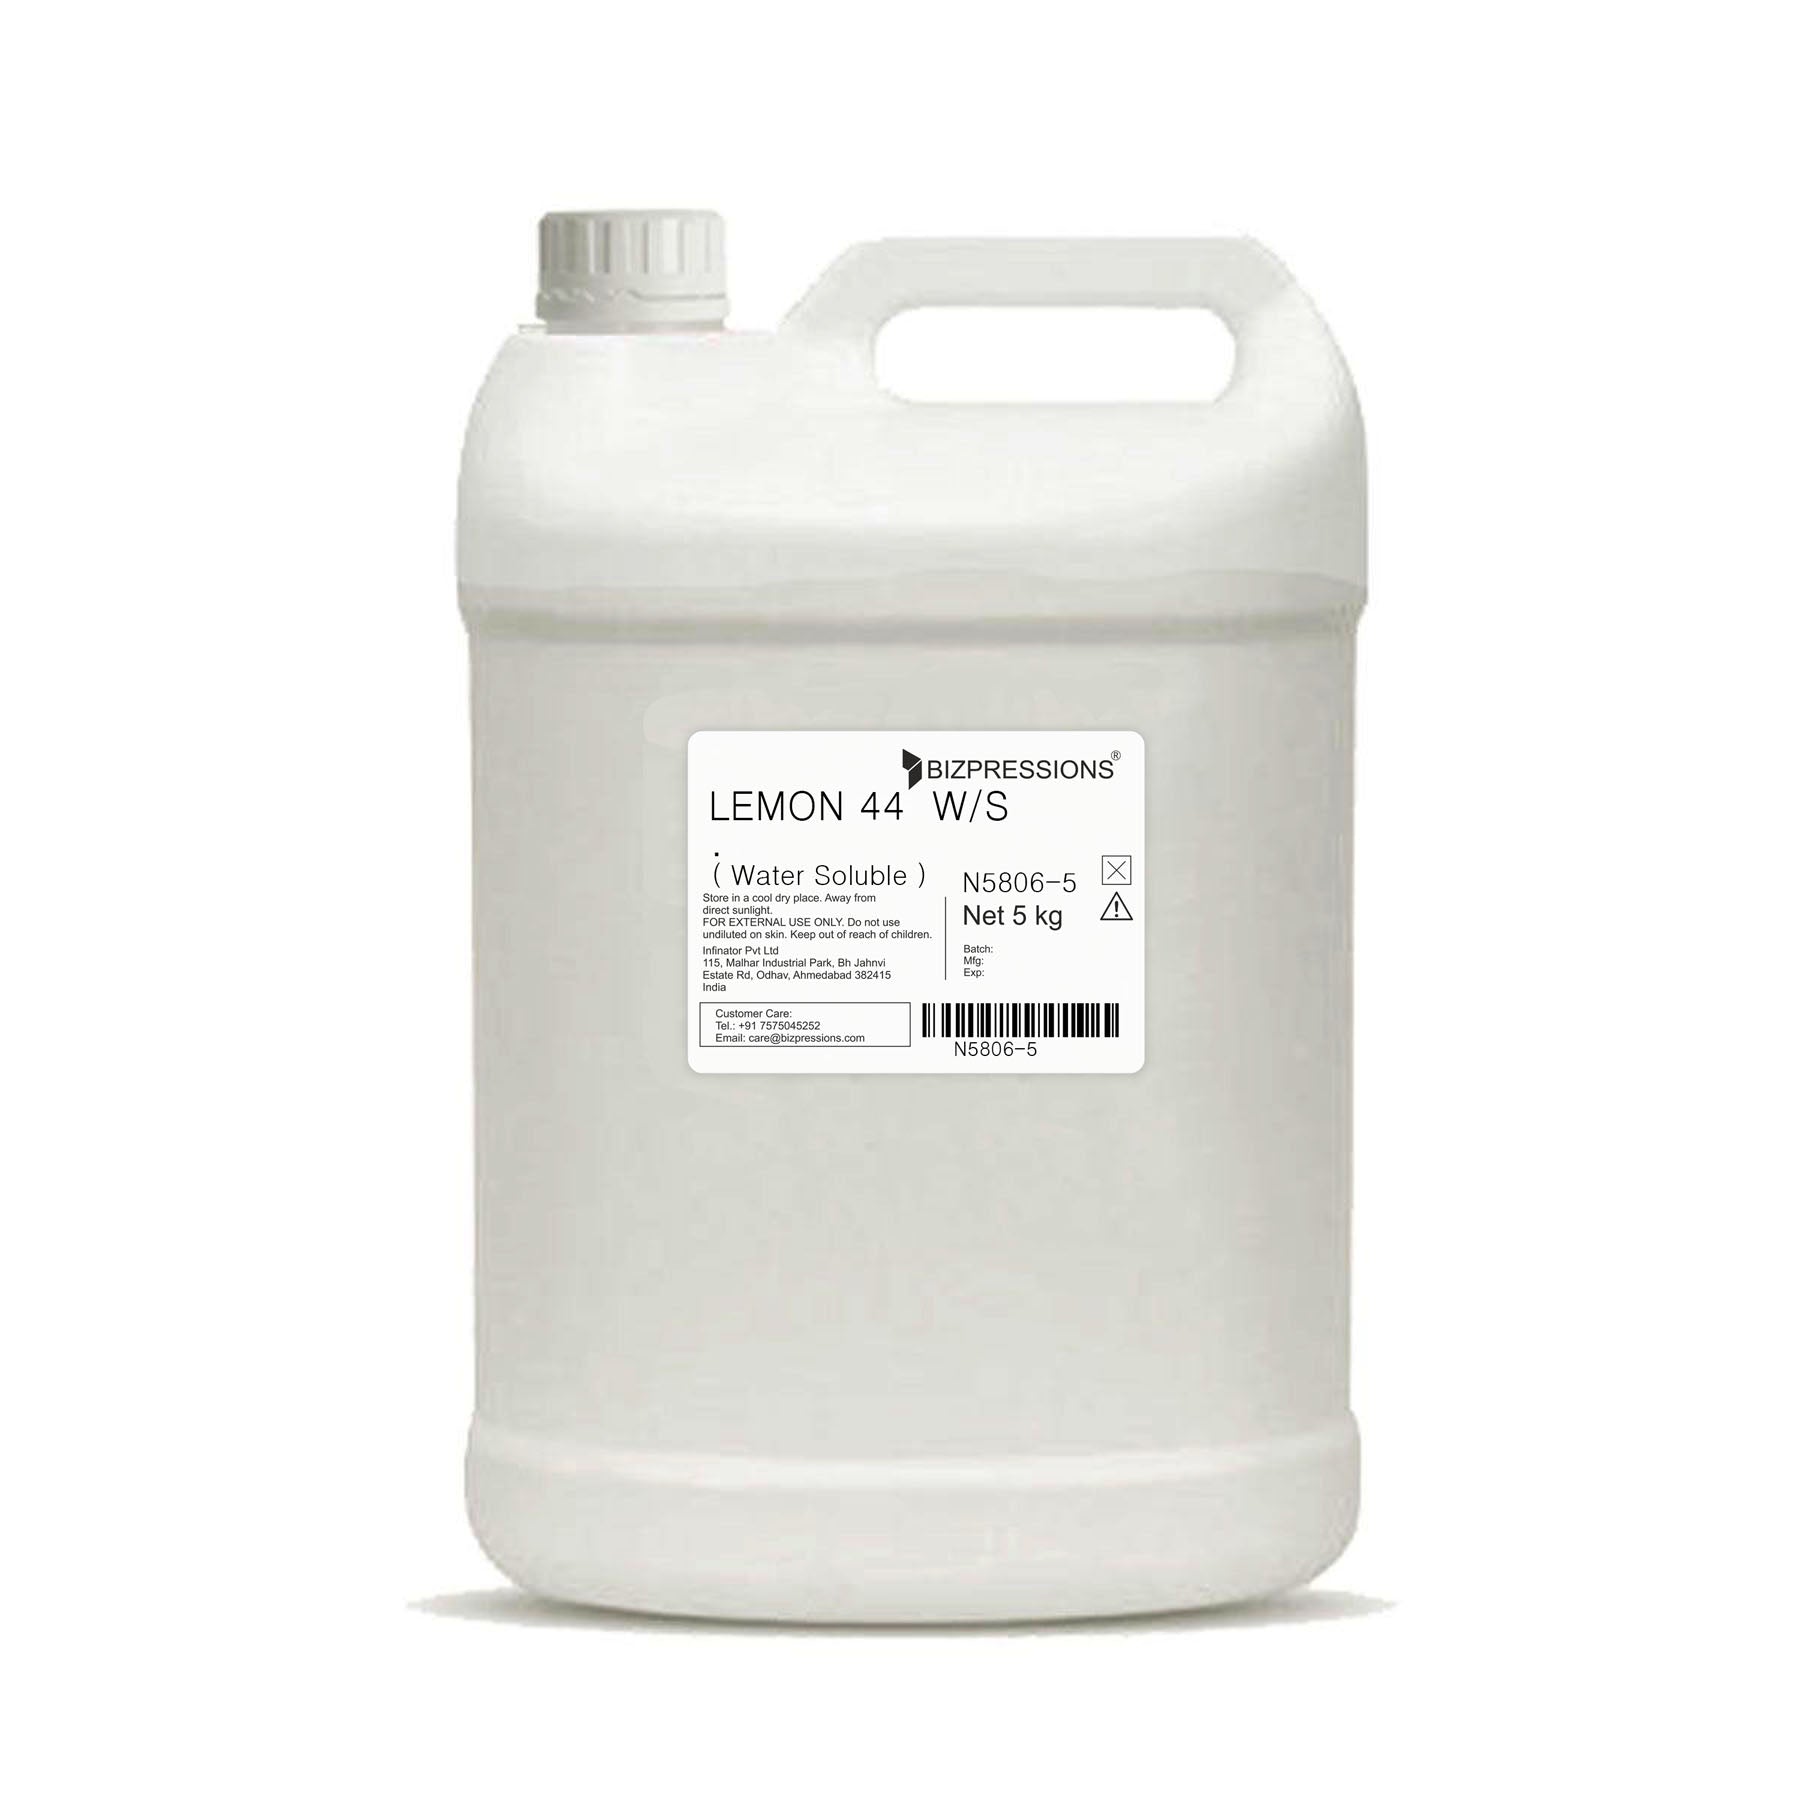 LEMON 44 W/S - Fragrance ( Water Soluble ) - 5 kg